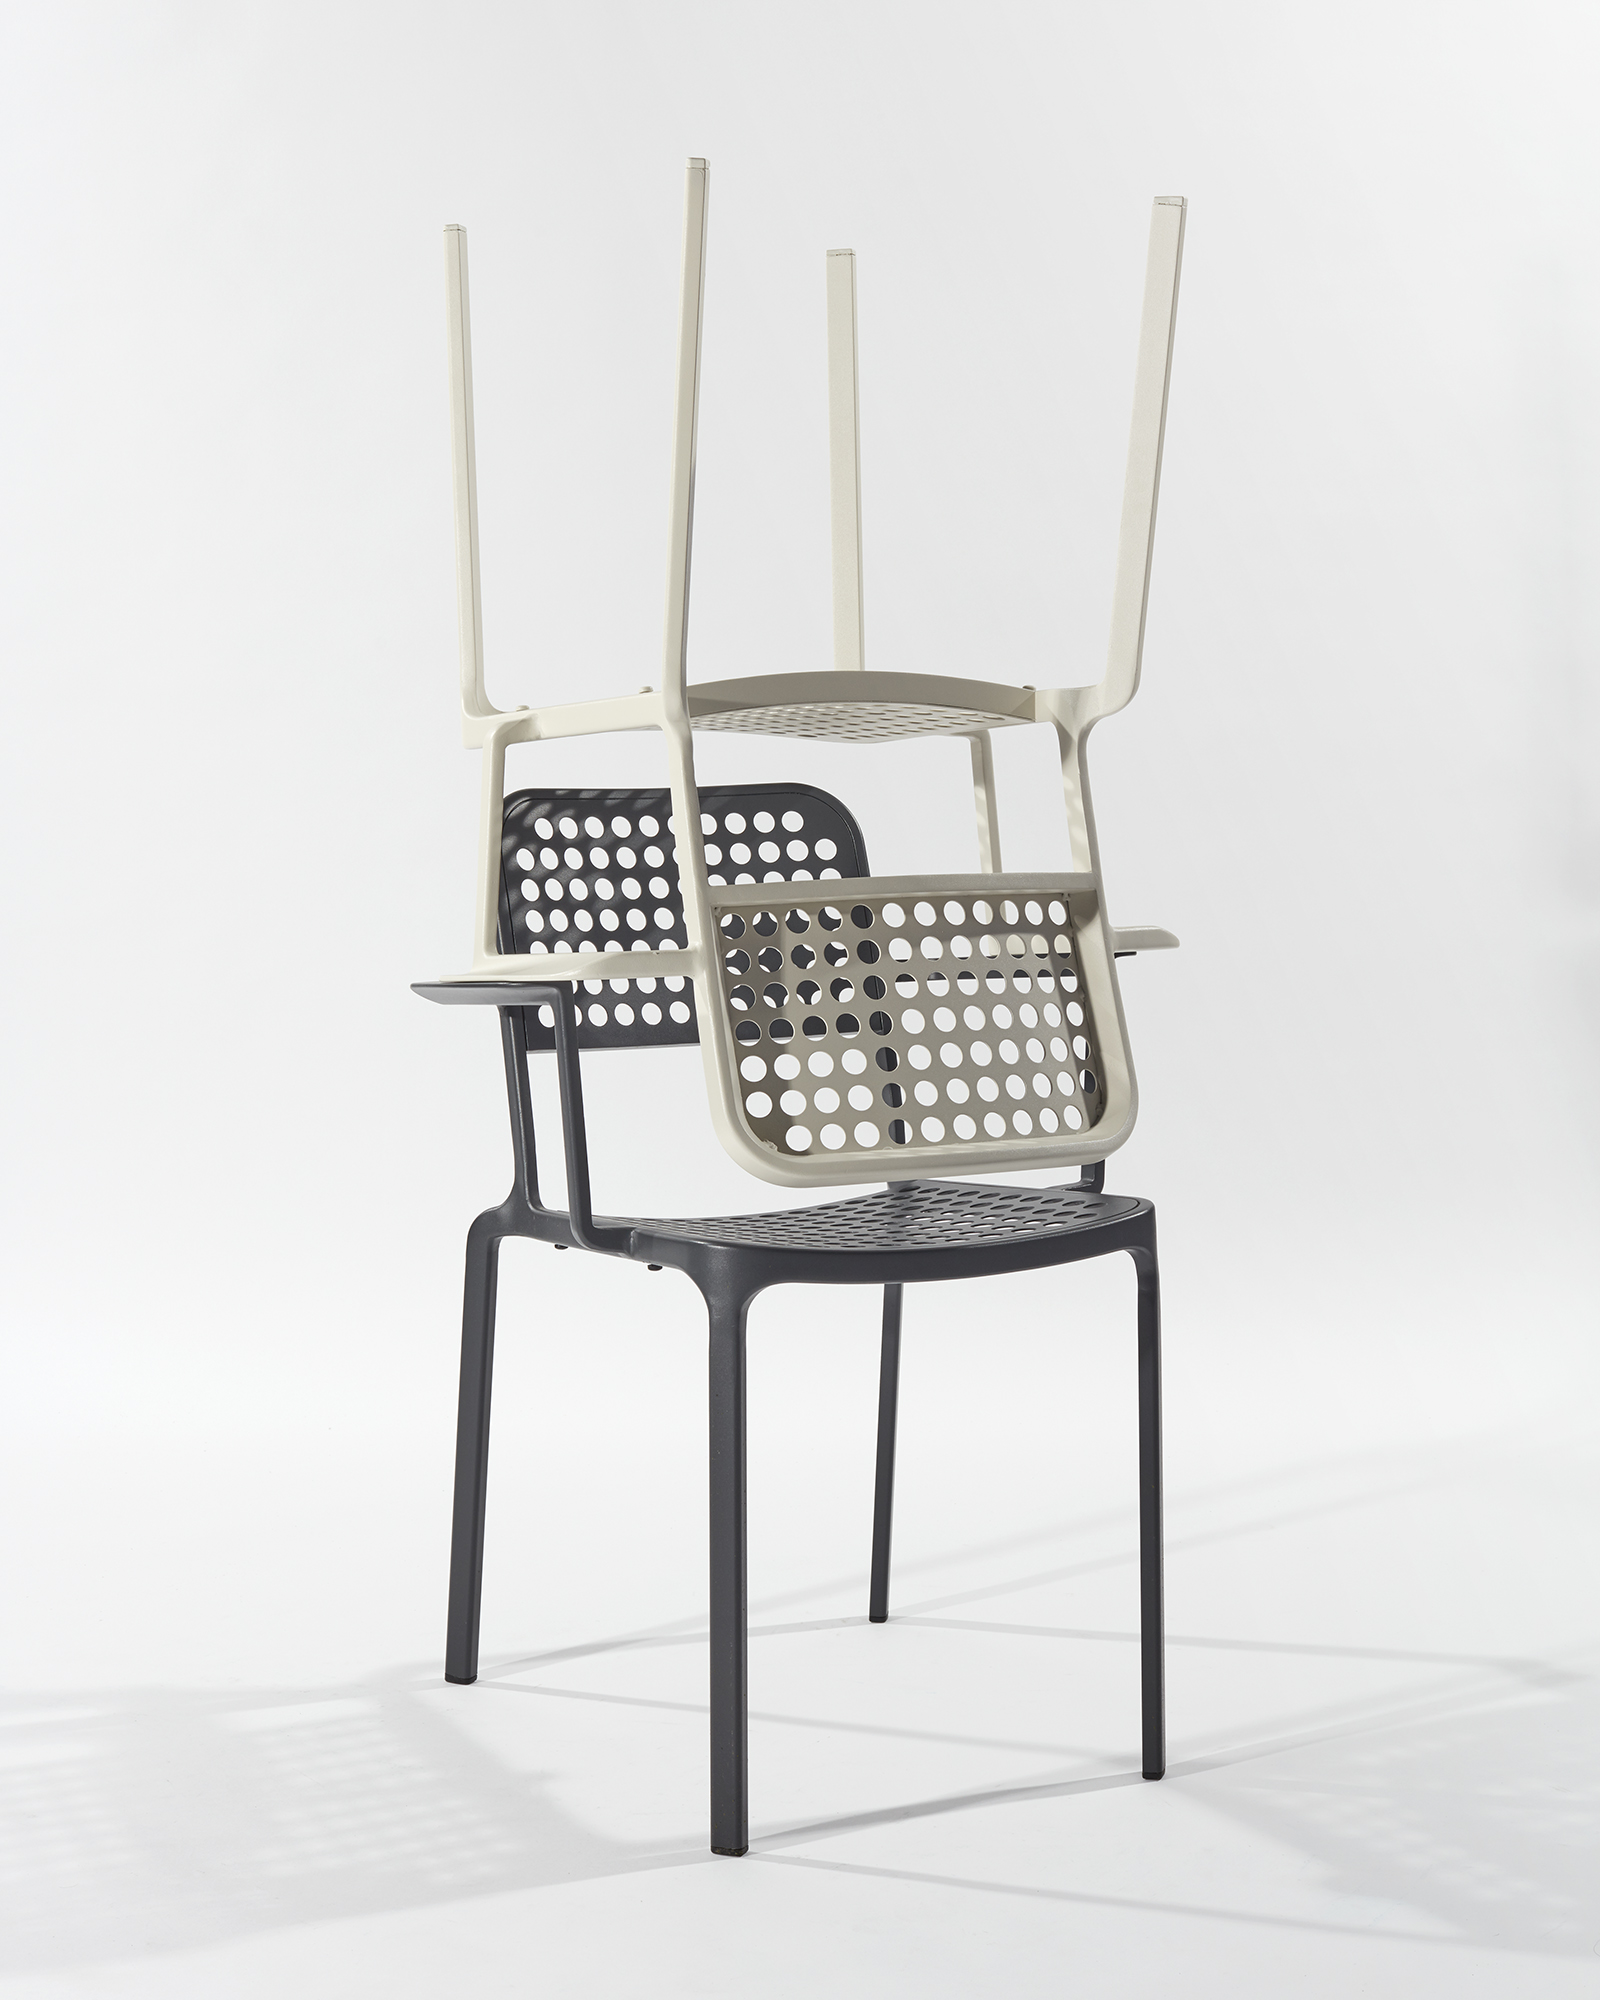 Lausanne Chair, 2017